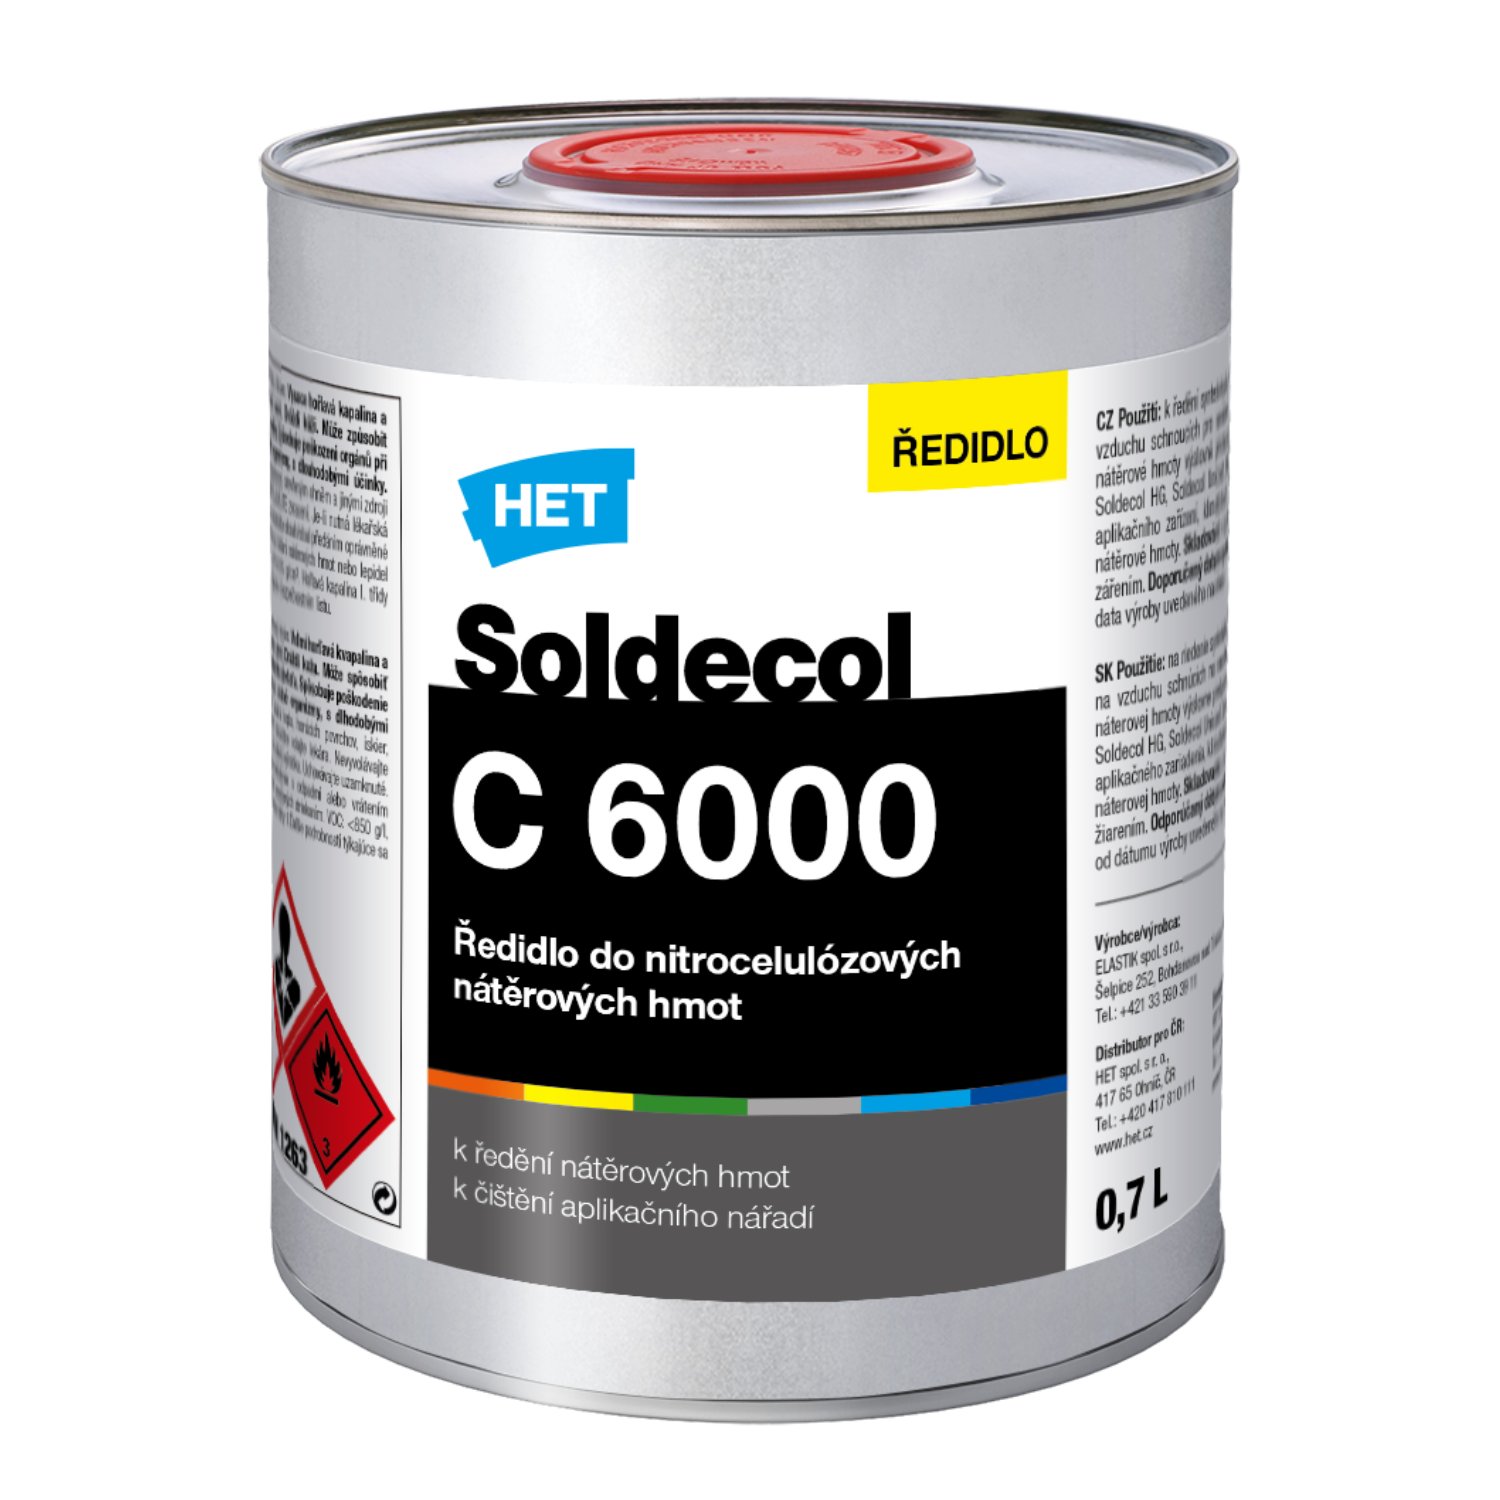 HET Soldecol C 6000 riedidlo do nitrocelulózových náterových hmôt 0,7 l